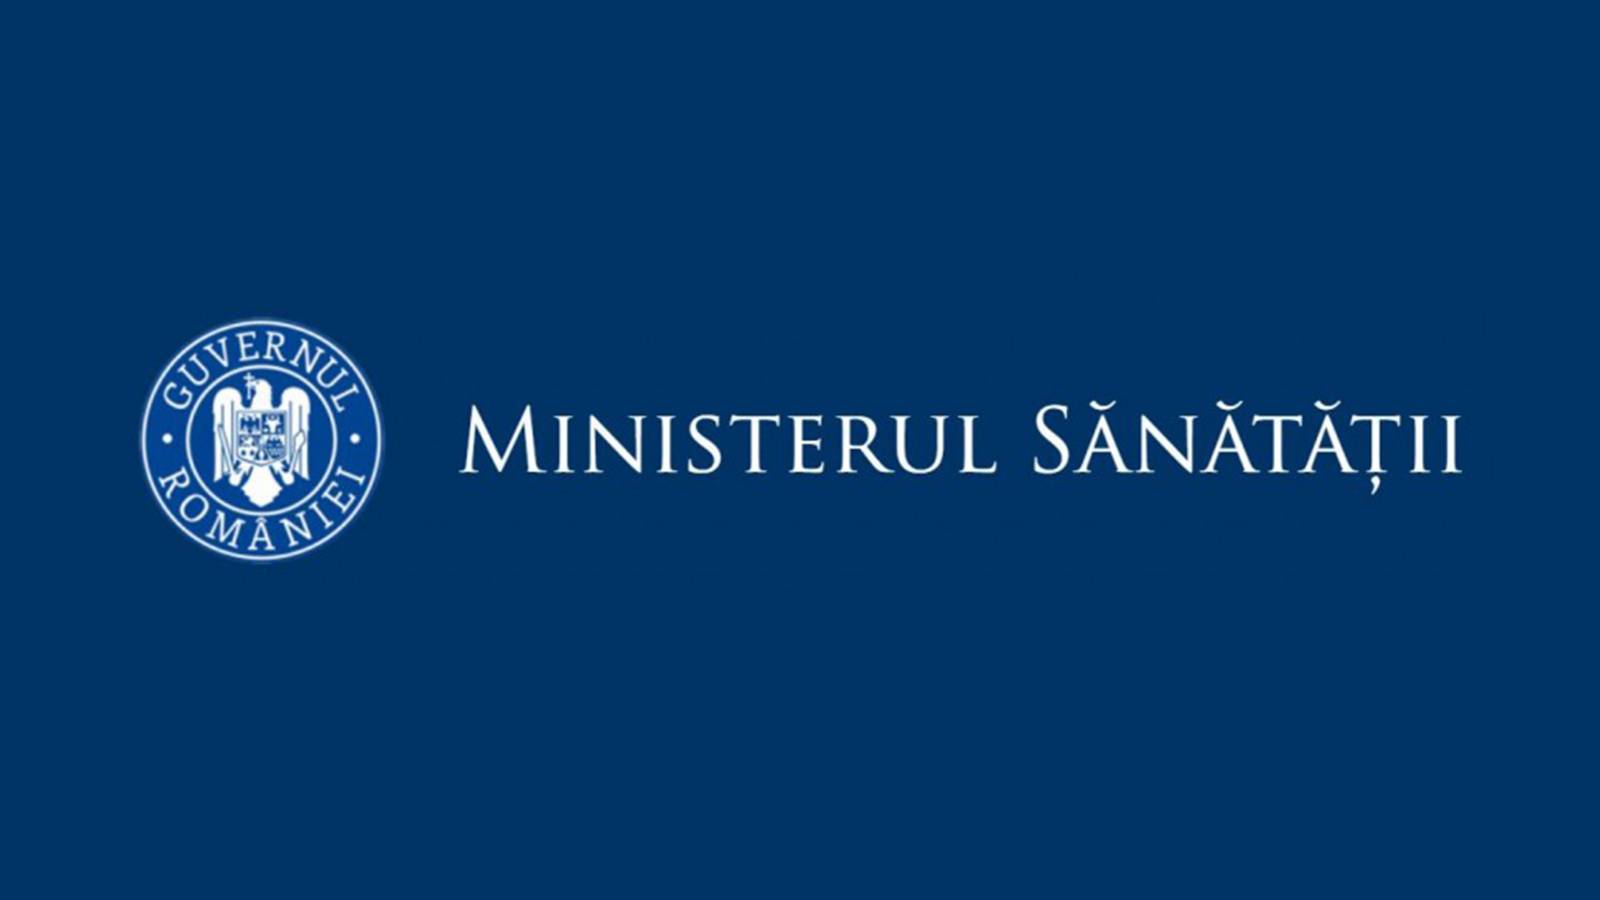 Ministerul Sanatatii Date pandemia Romania